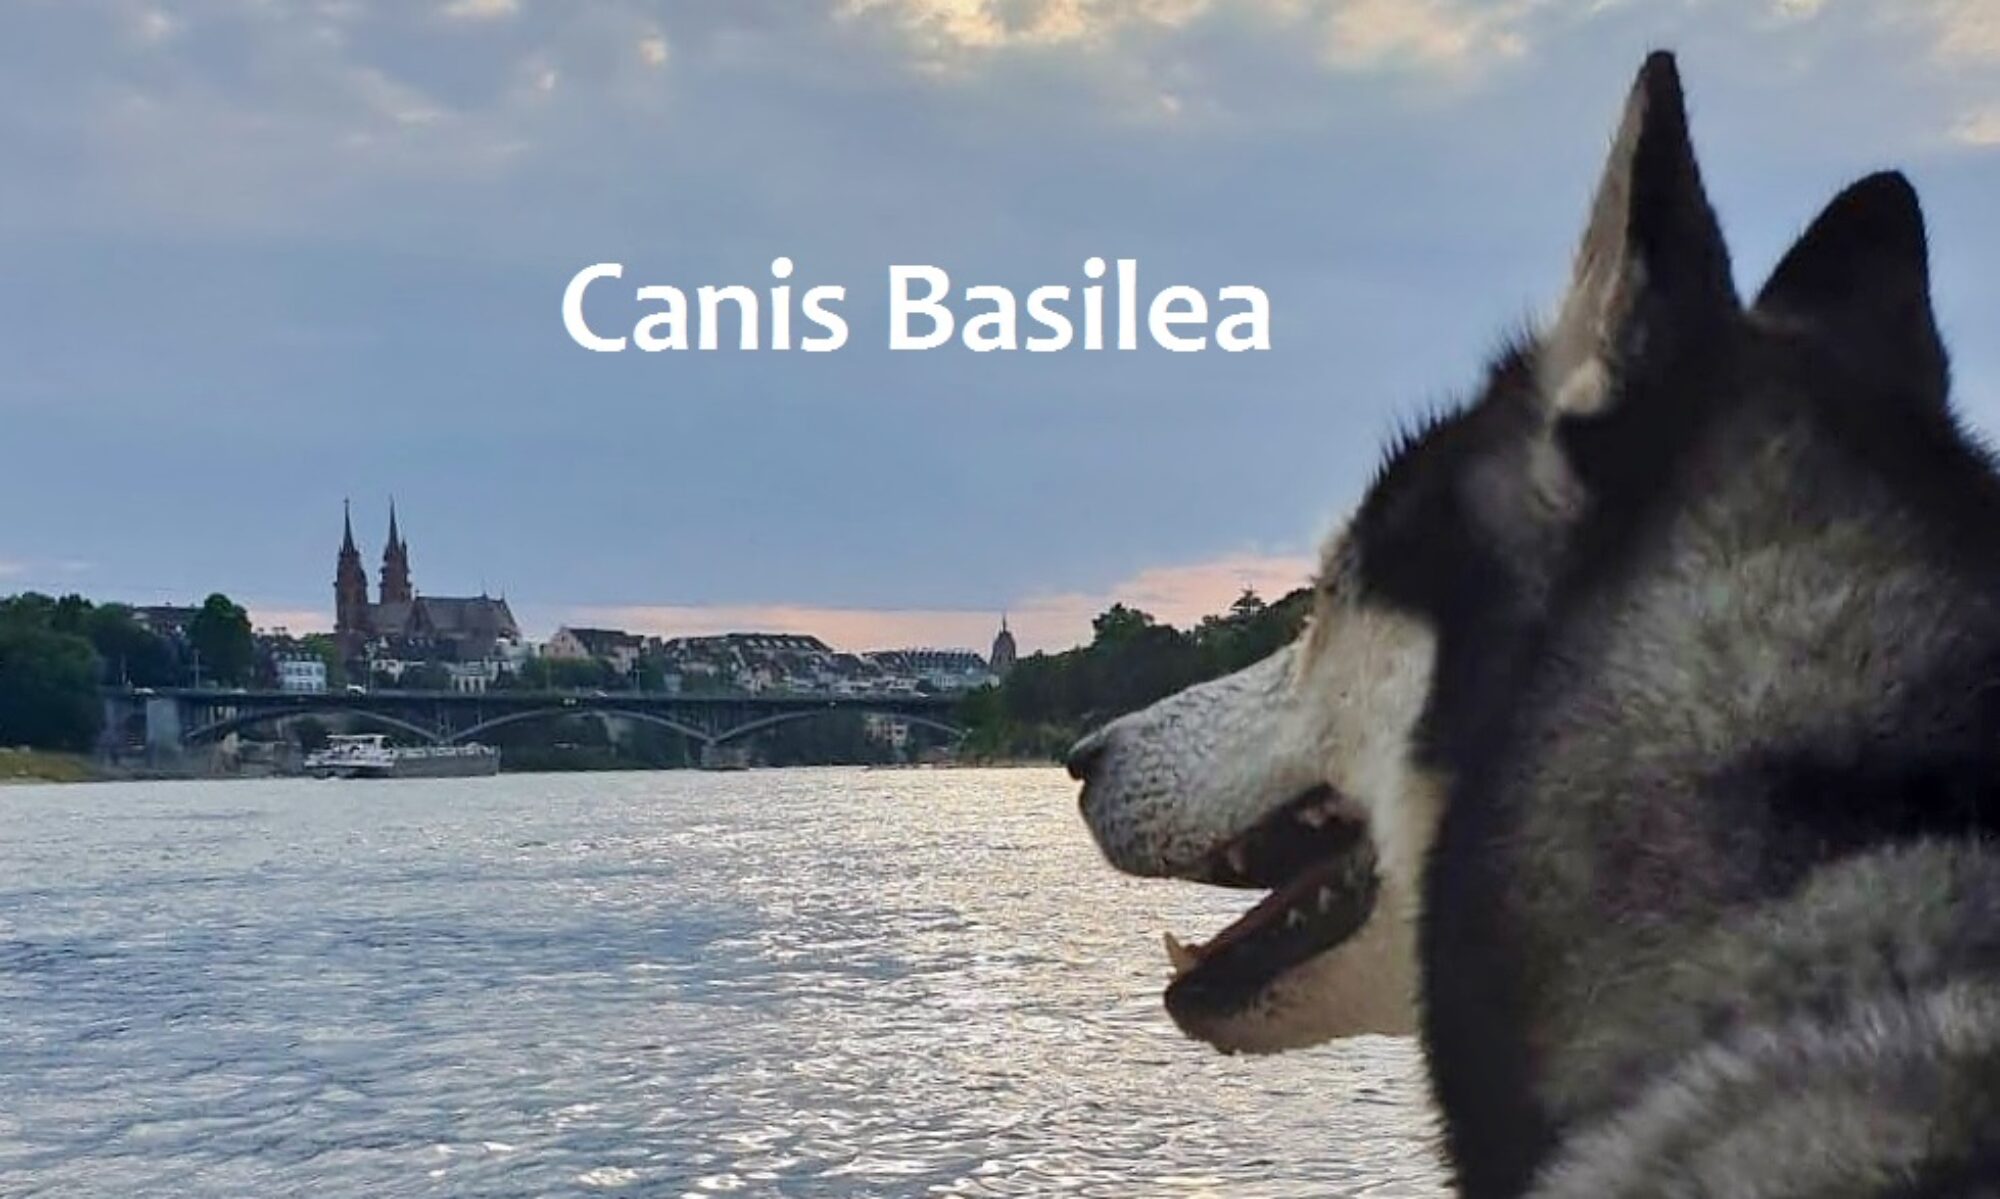 Canis Basilea